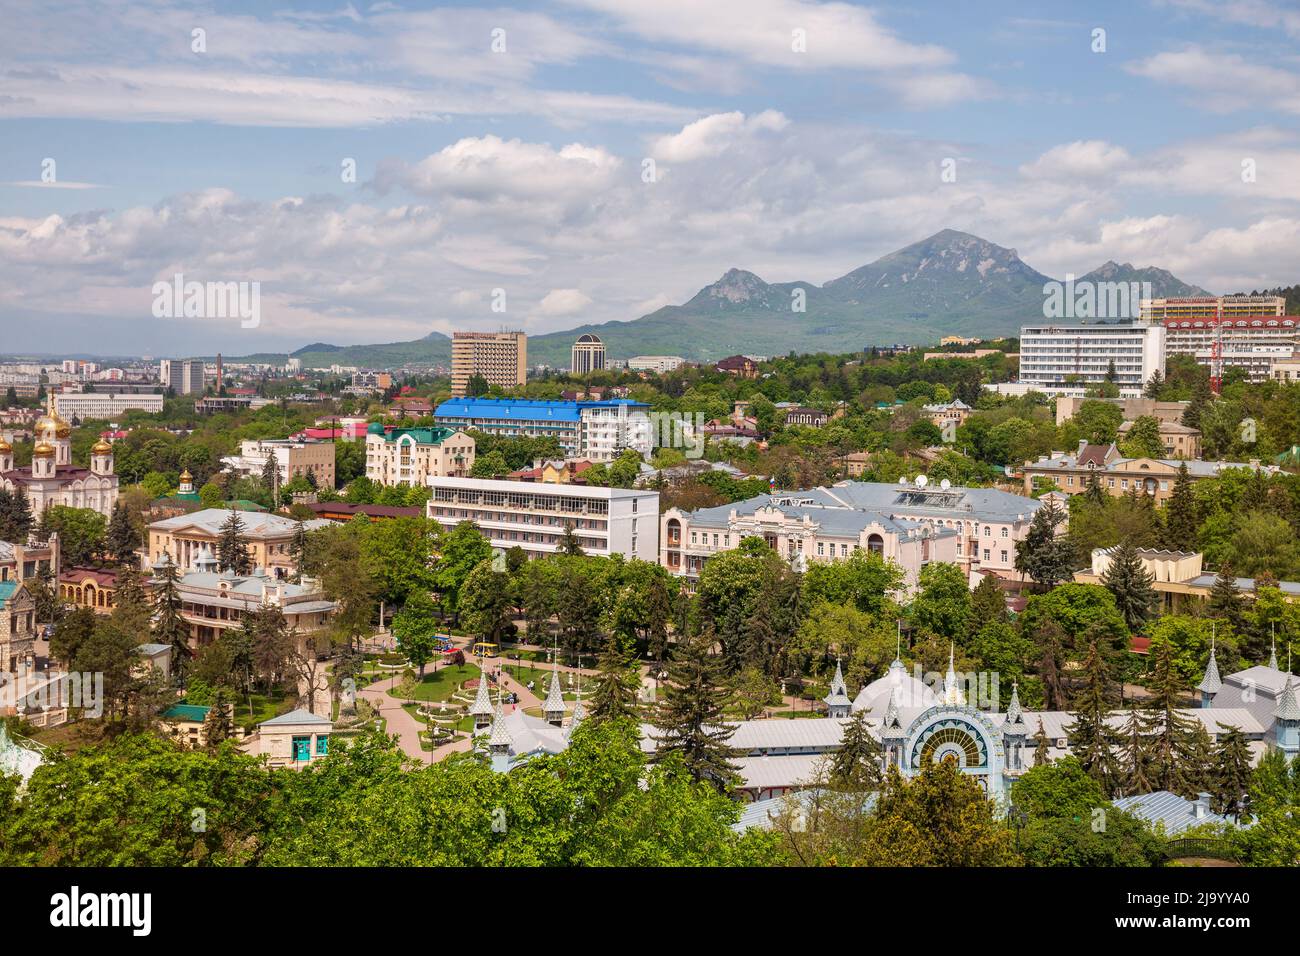 Vista aérea de la ciudad turística de Pyatigorsk y el Monte Beshtau Foto de stock